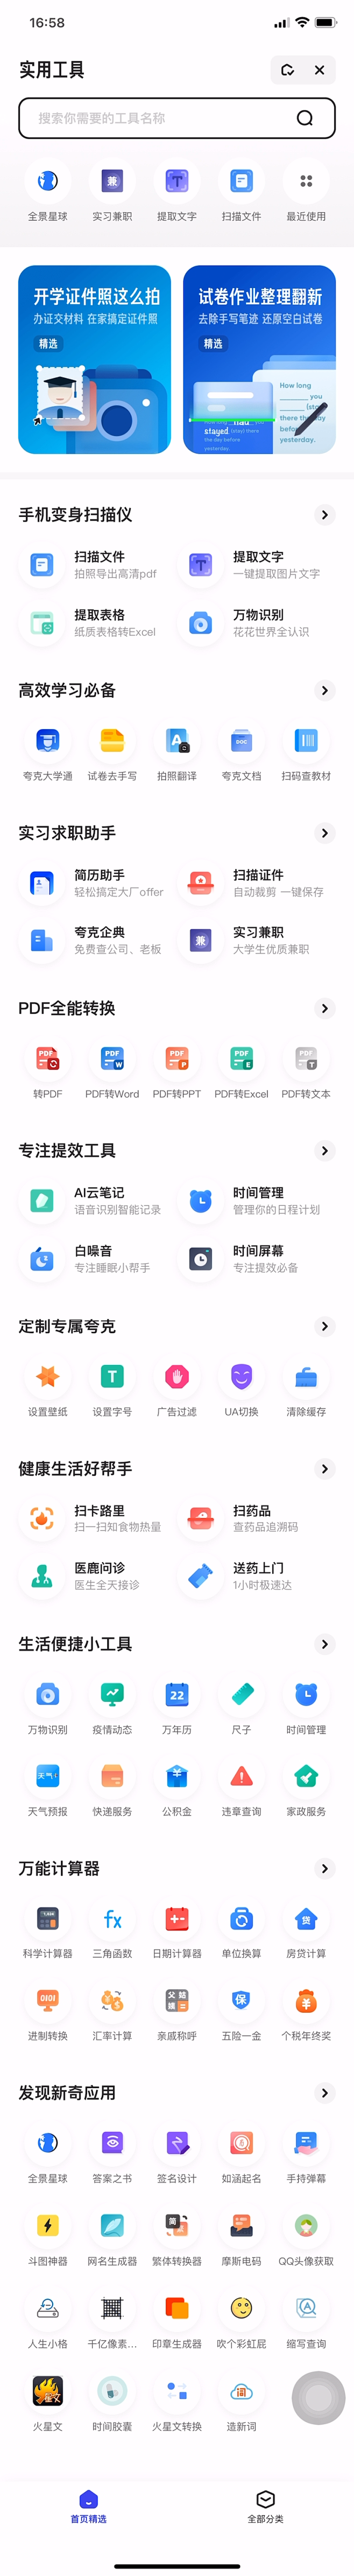 夸克app UI